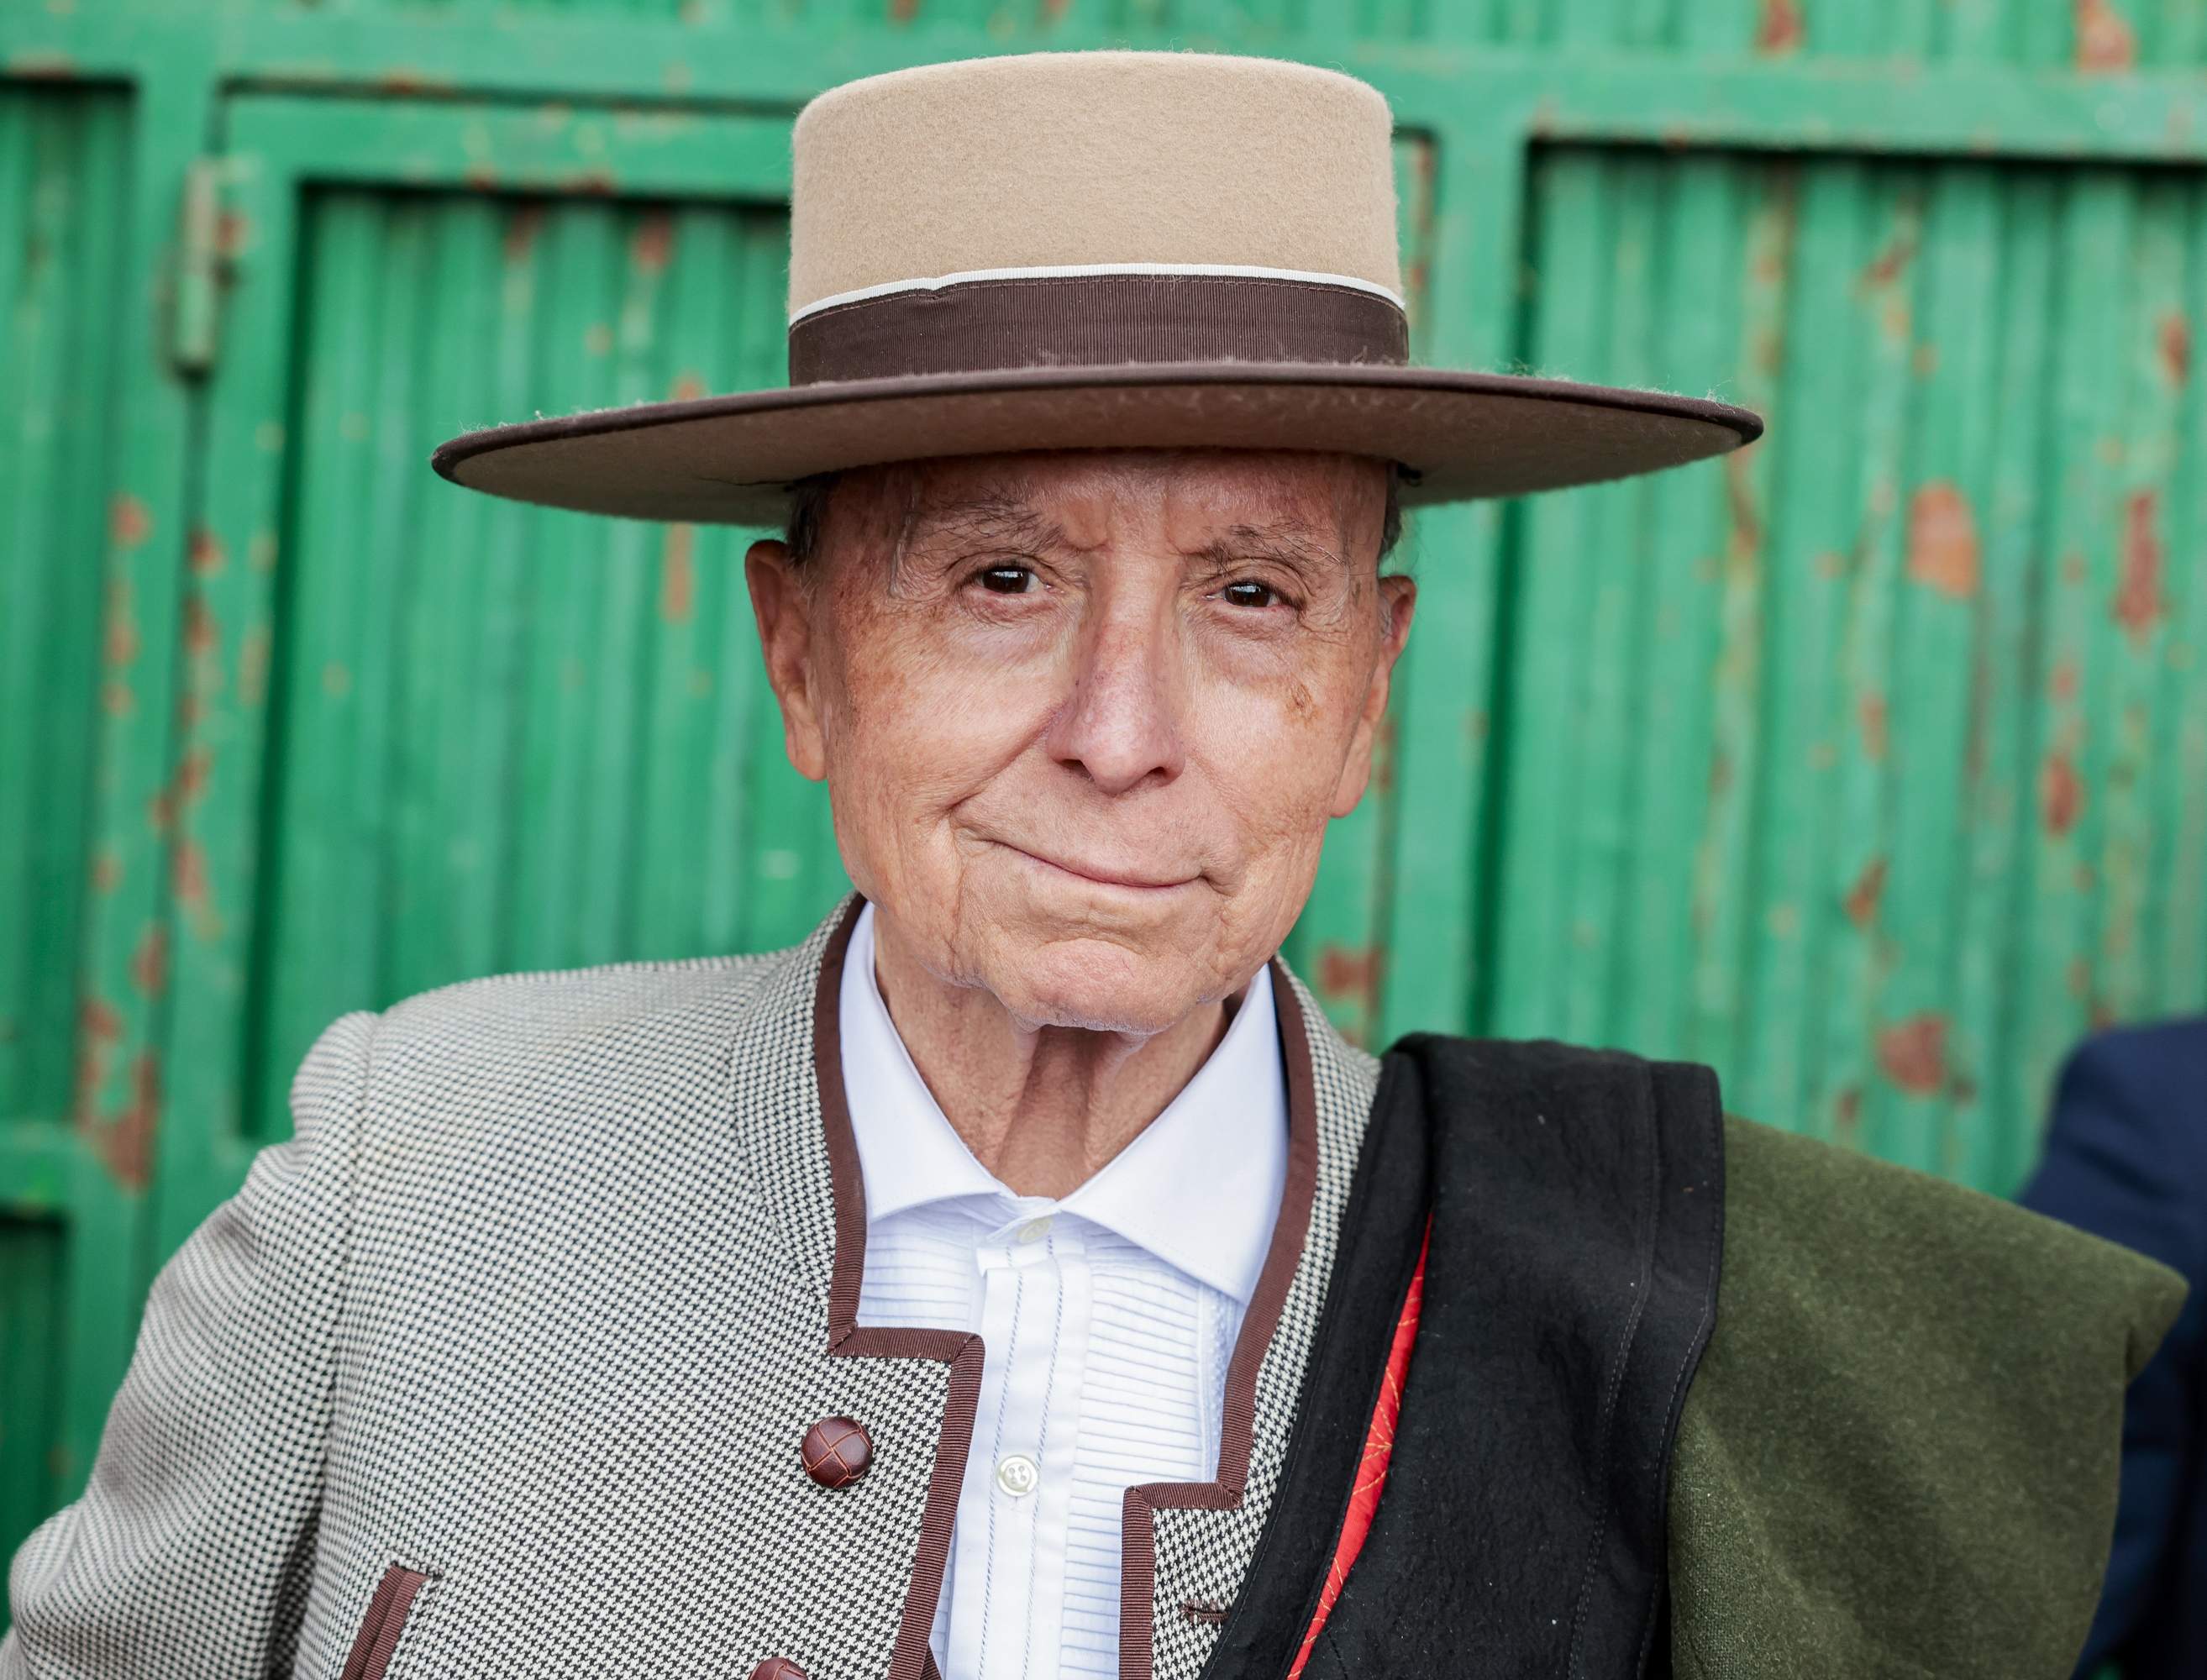 José Ortega Cano, misèria total amb 70 anys, la solució és desesperada